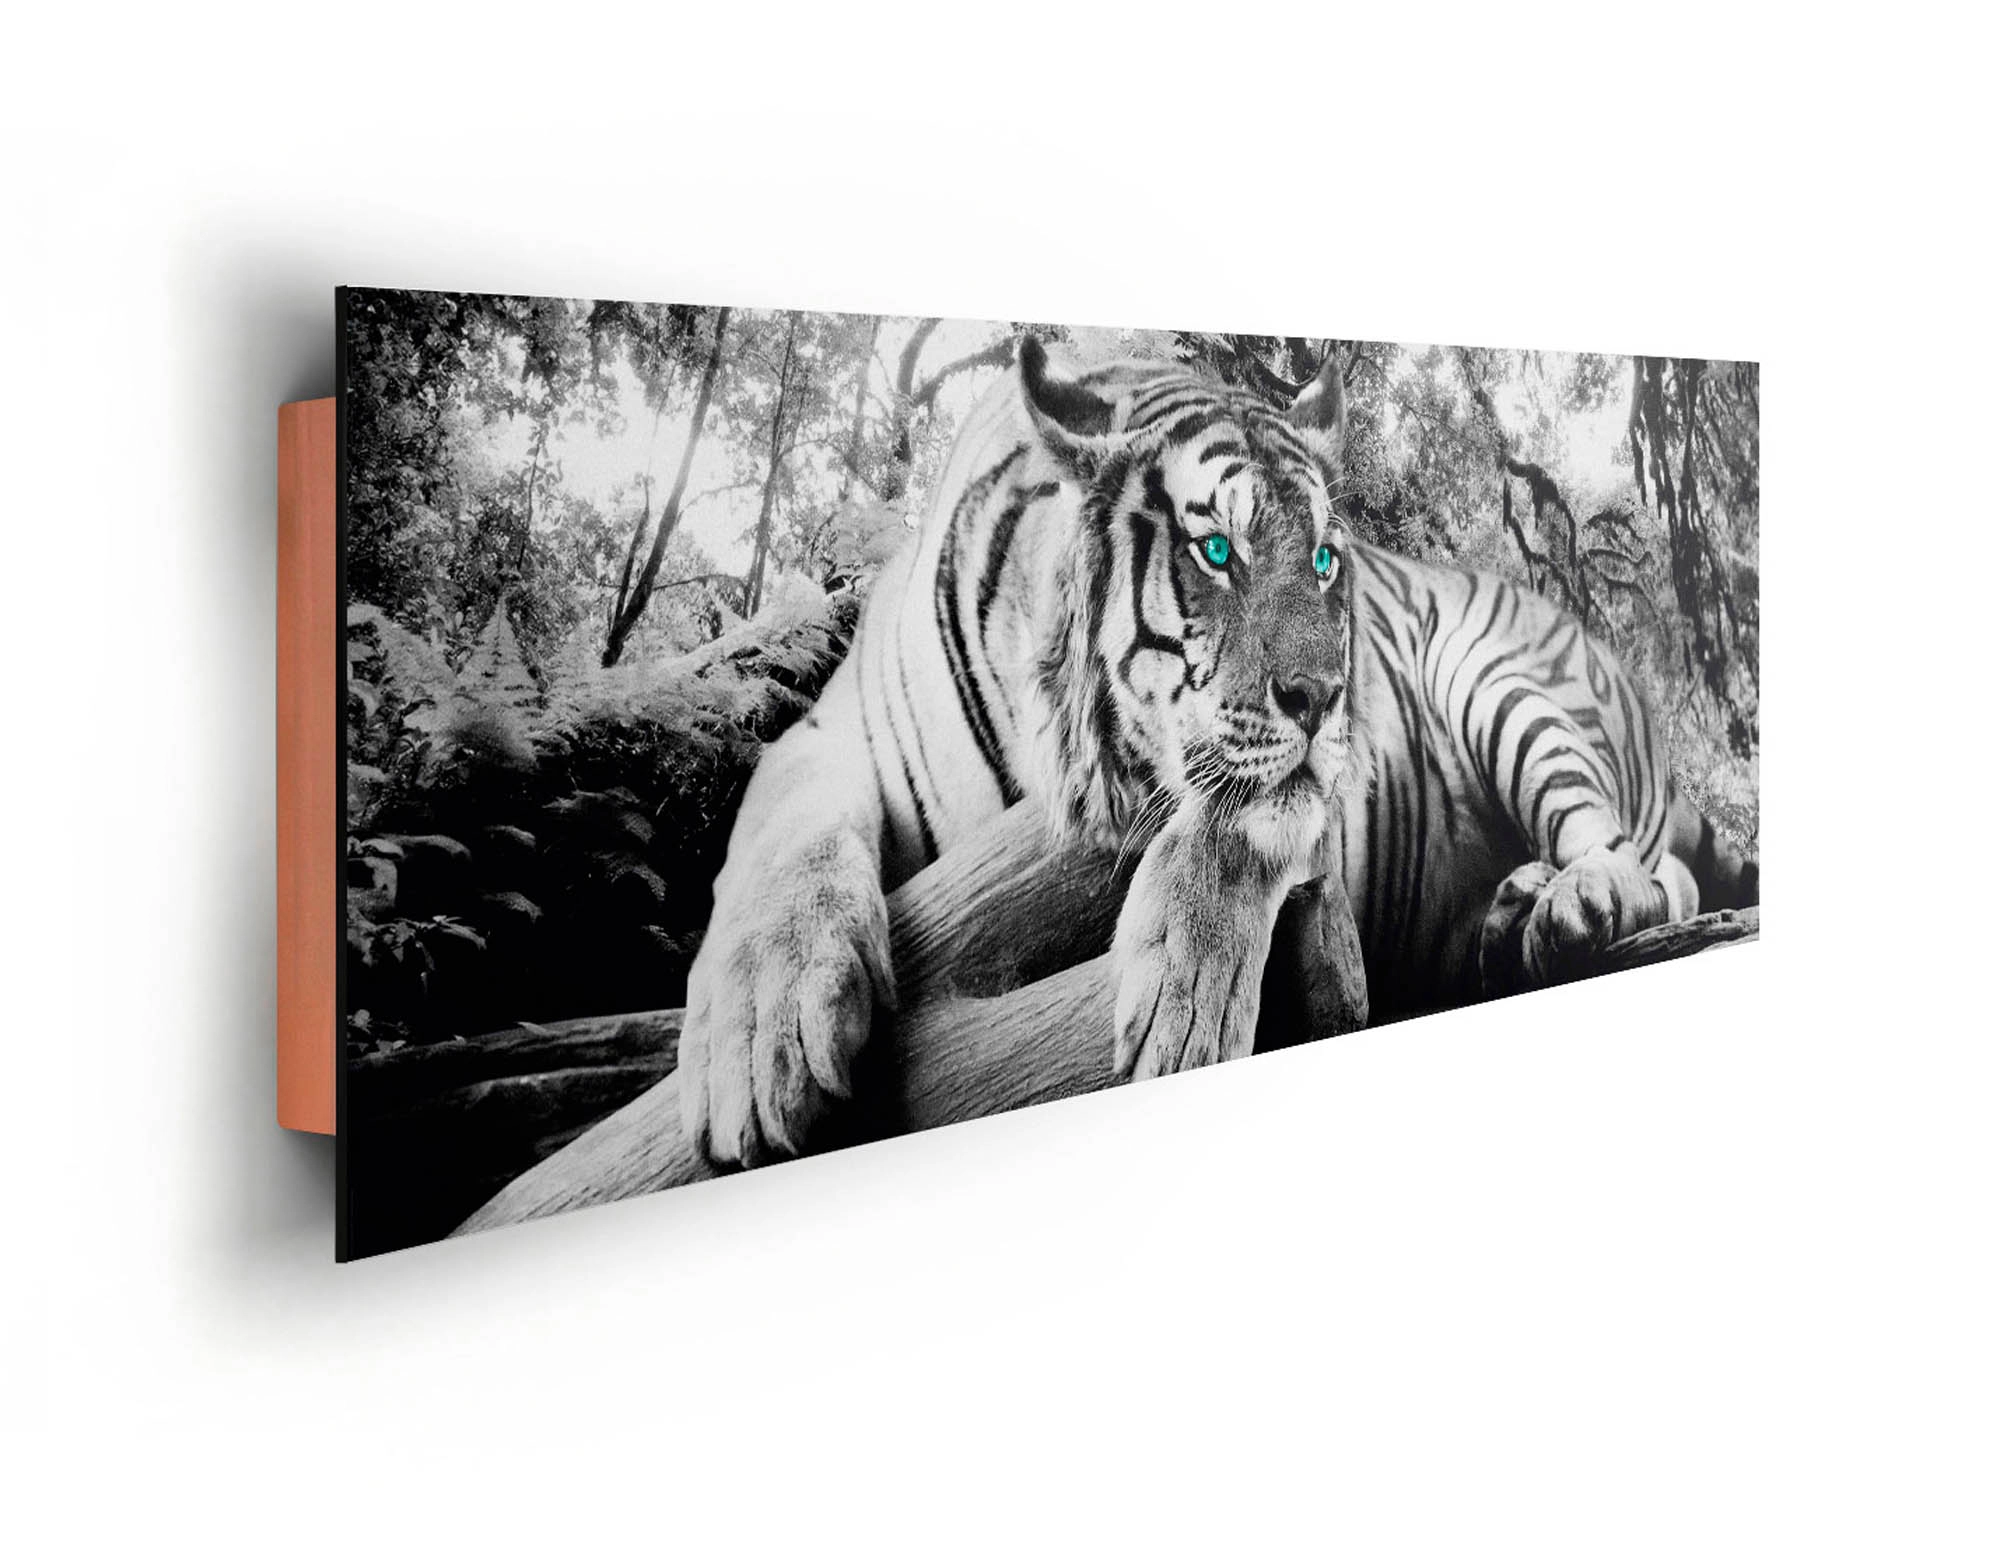 Wandbild Tiger guckt dich an 156 cm x 52 cm kaufen bei OBI